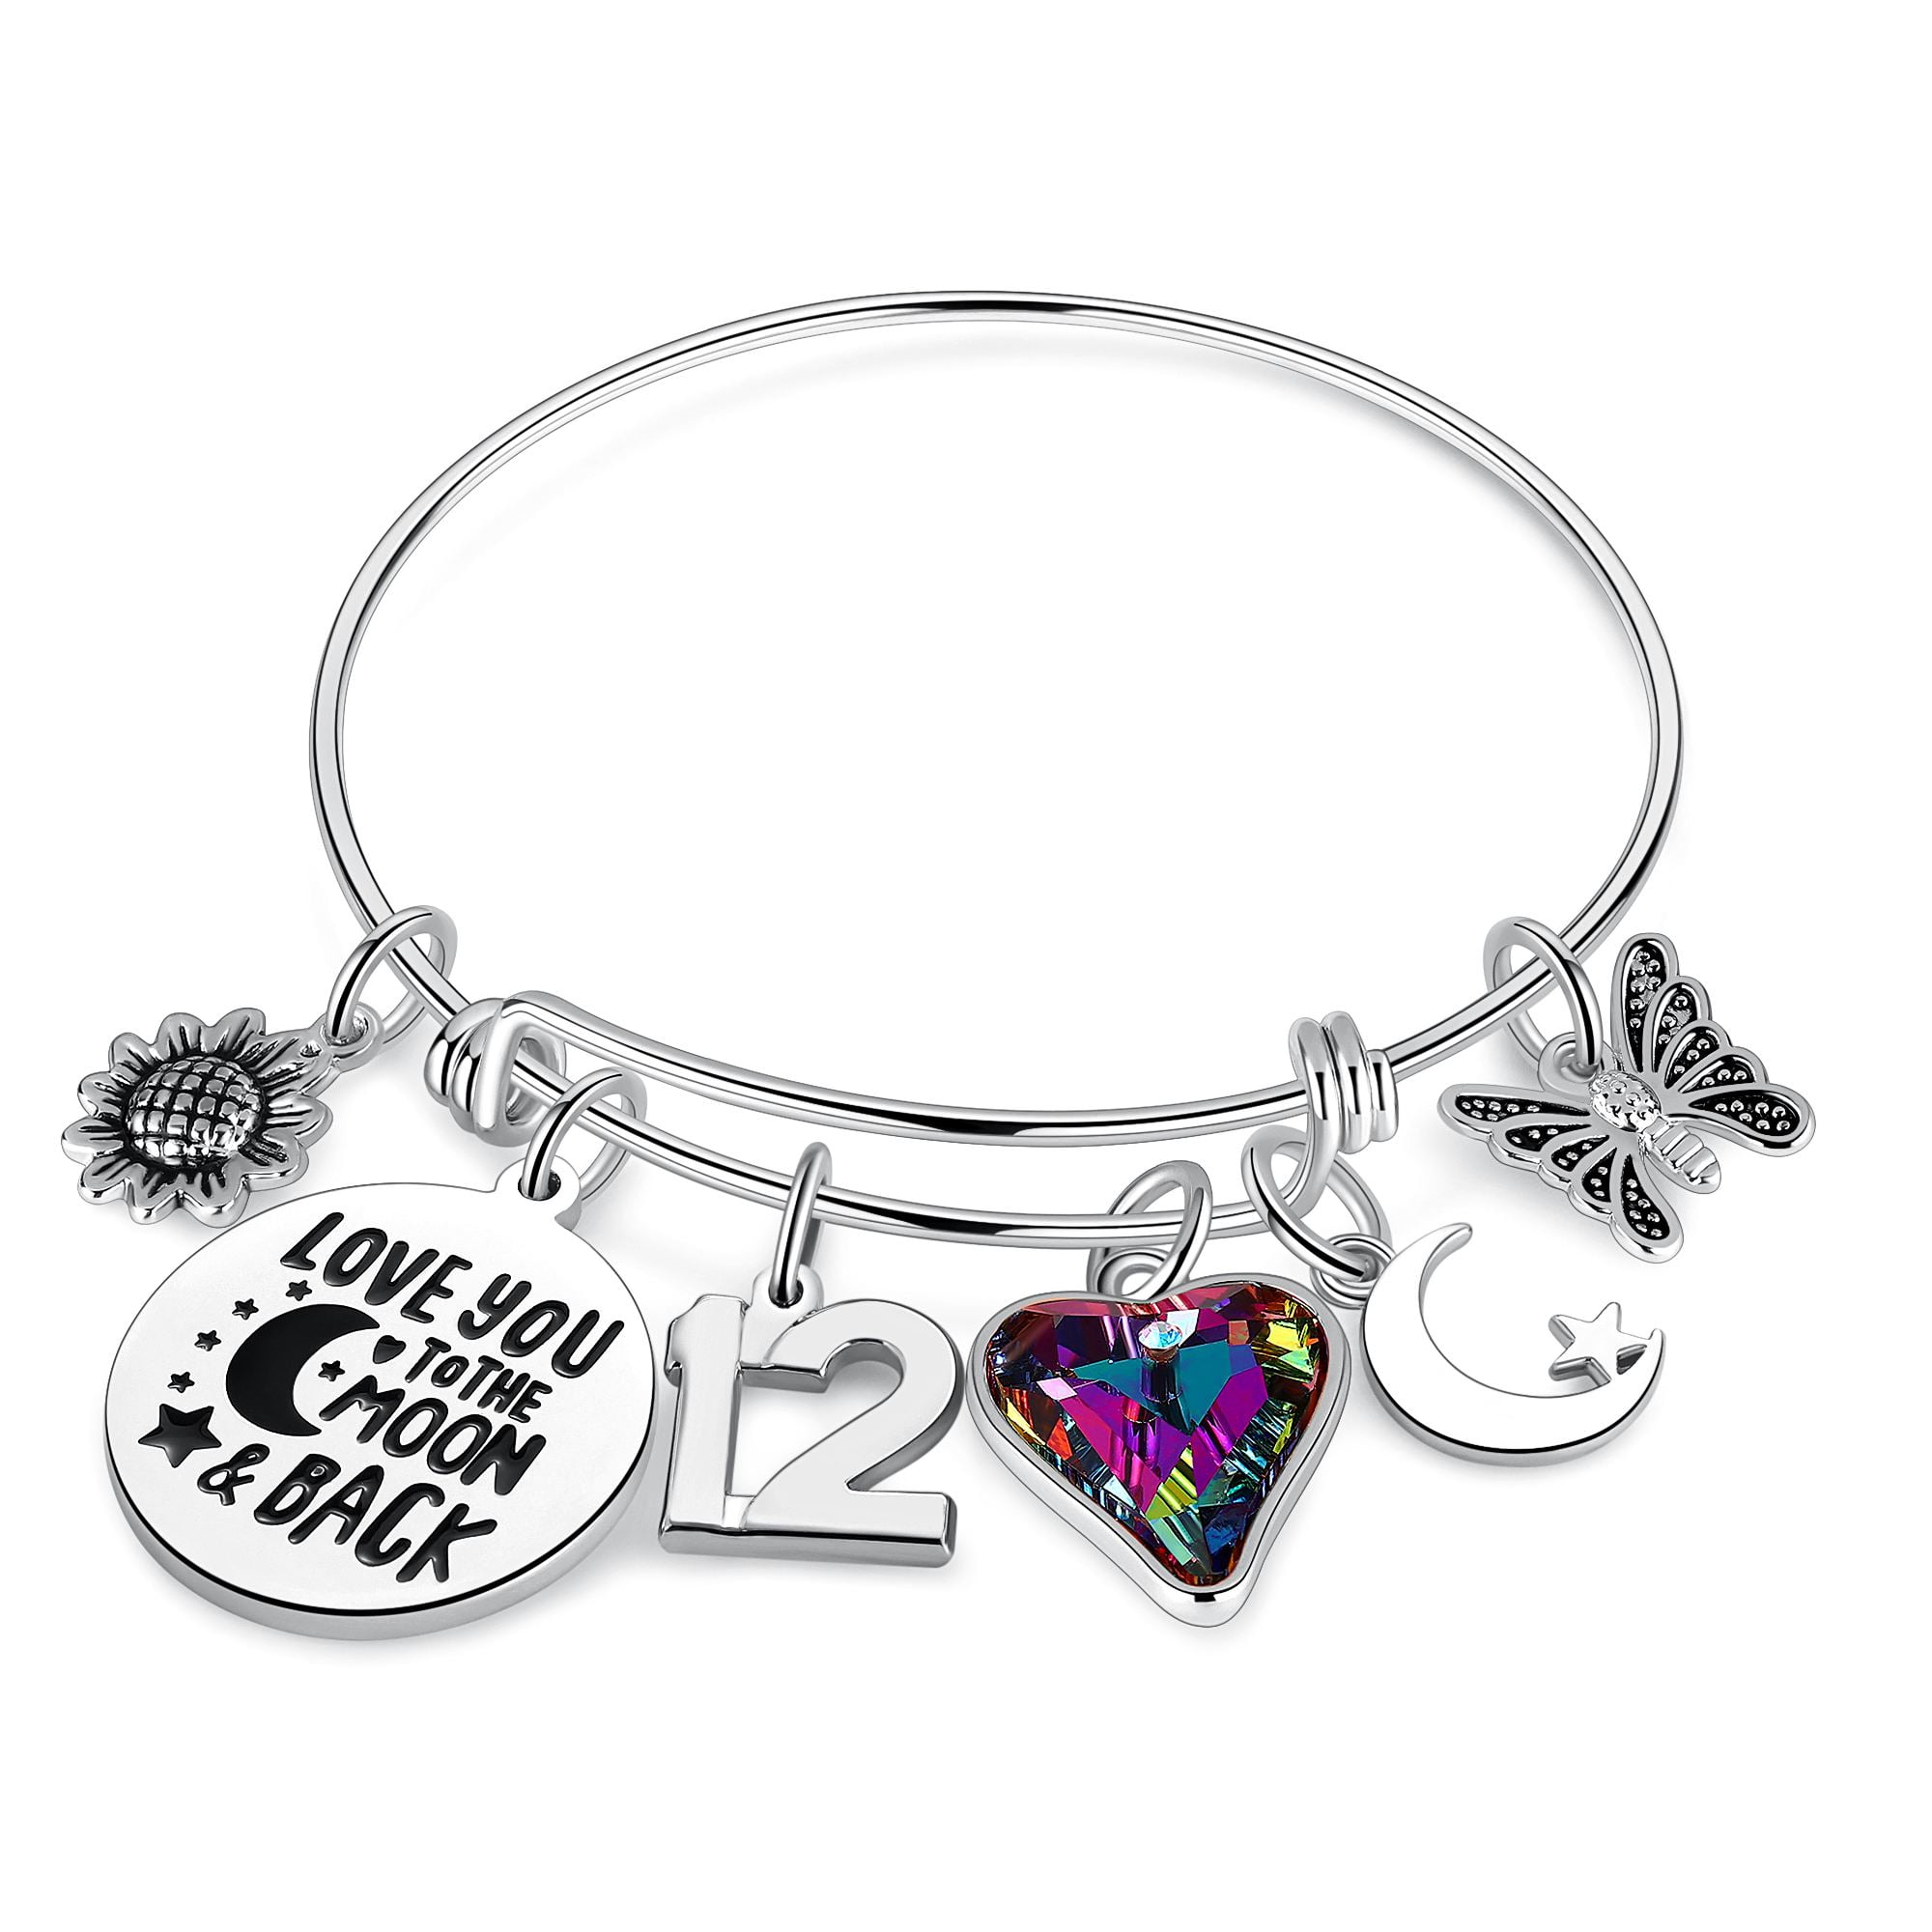 Granddaughter gift Beaded jewellery for kids. Princess charm Girls Birthday gift Princess bracelet Gift for Girls